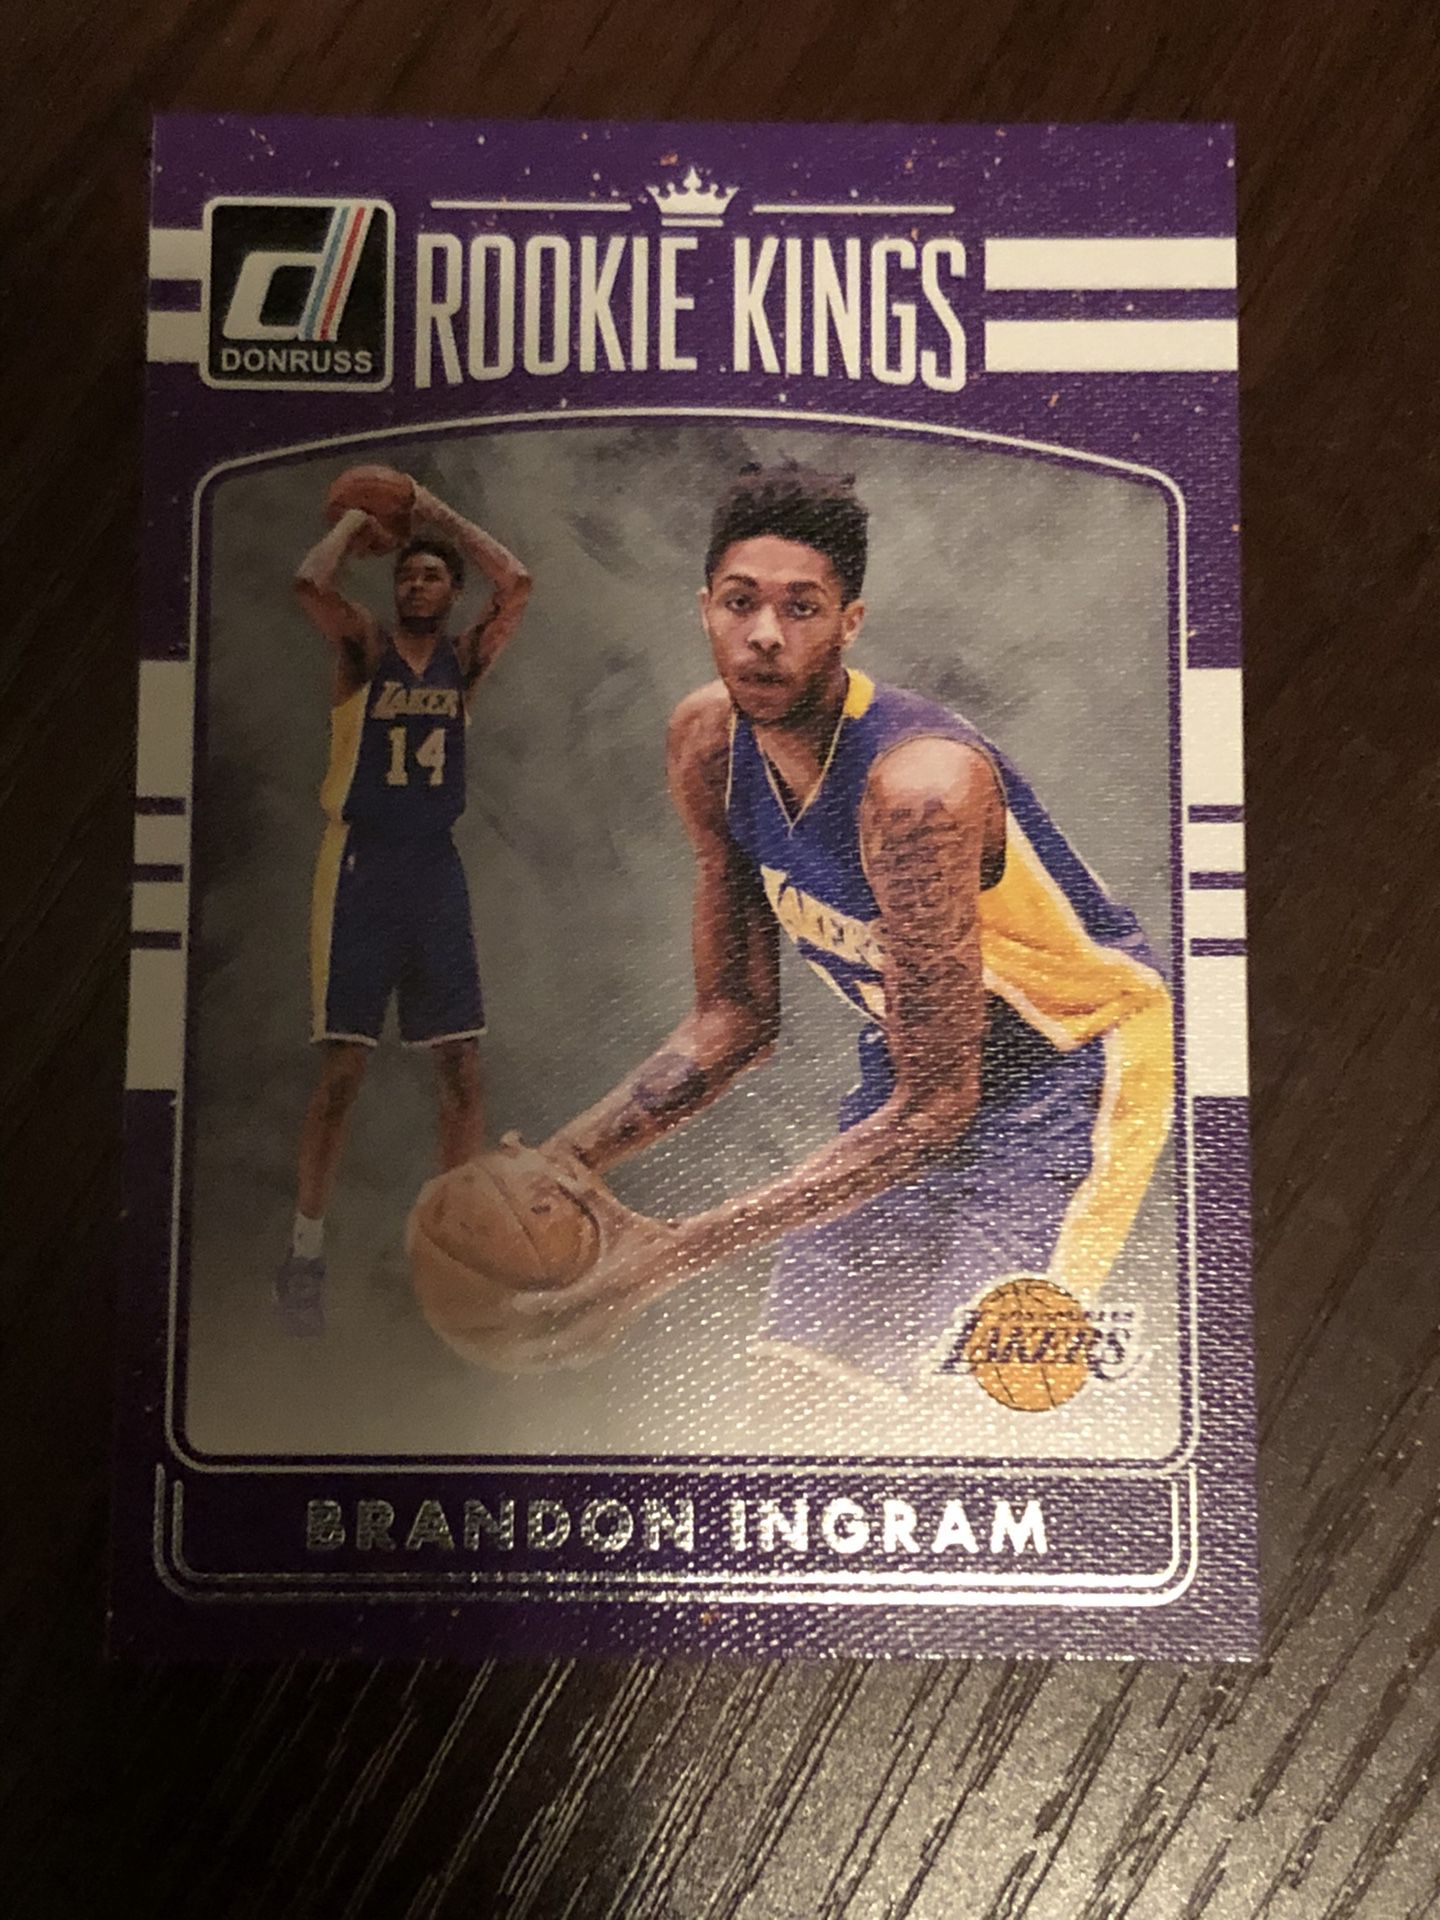 2016 donruss Brandon Ingram rookie kings